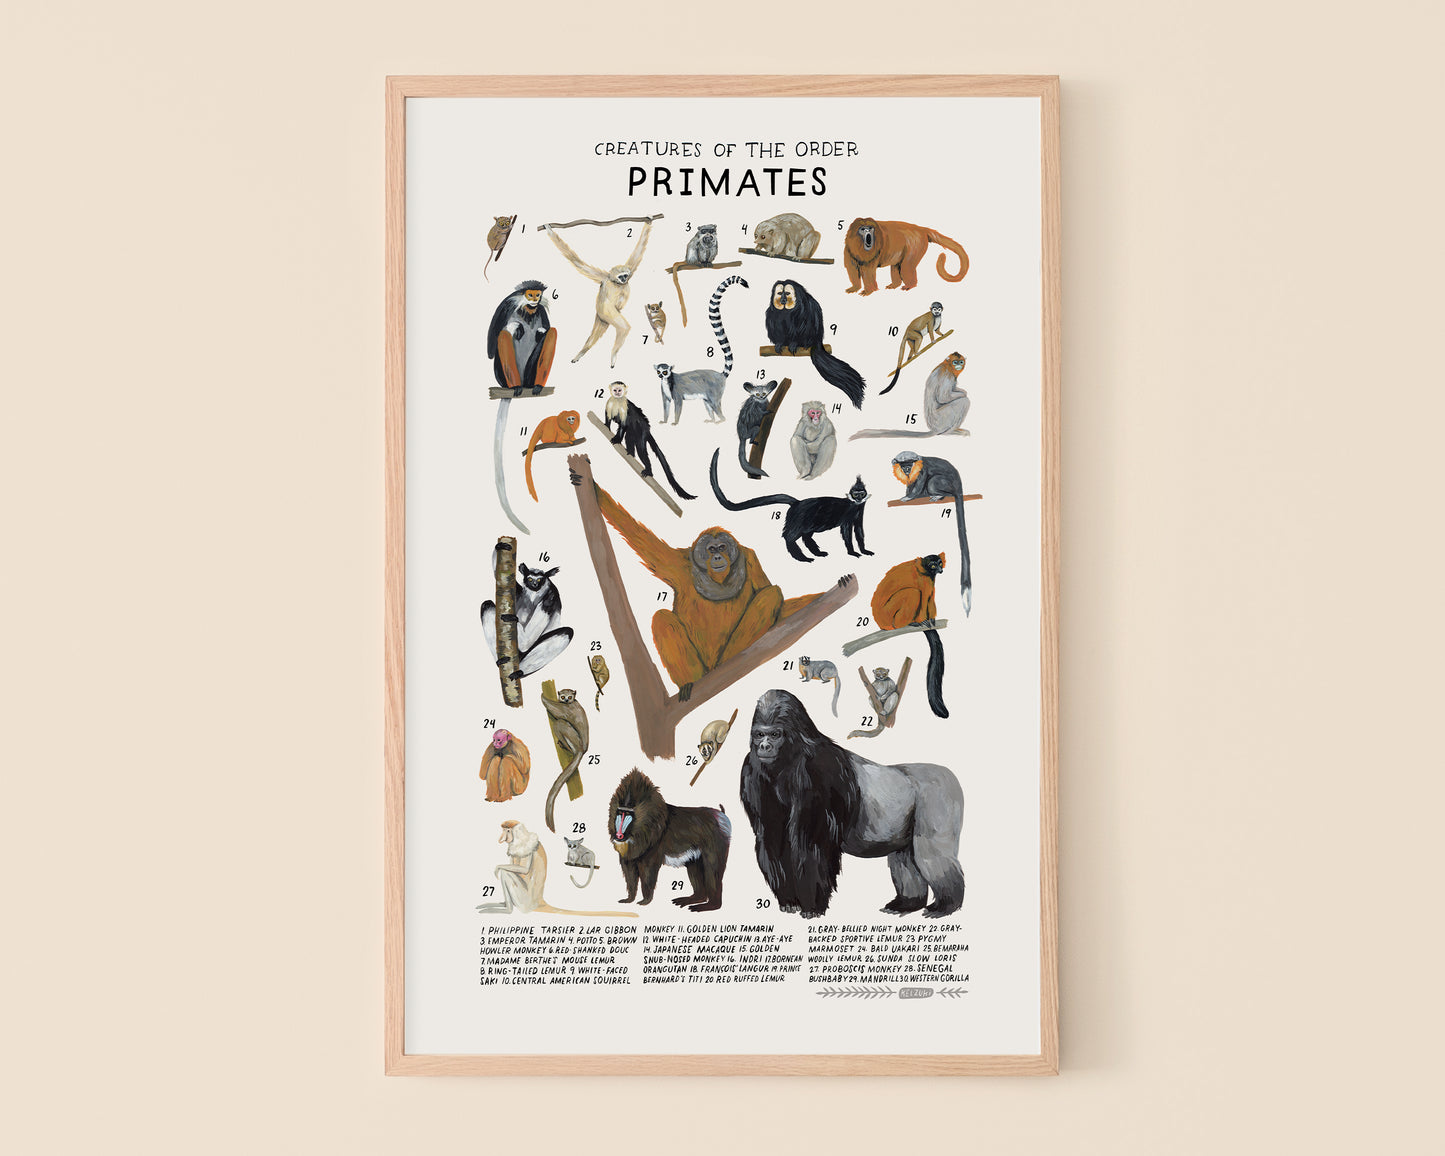 Primates art print- Creatures of the Order Primates